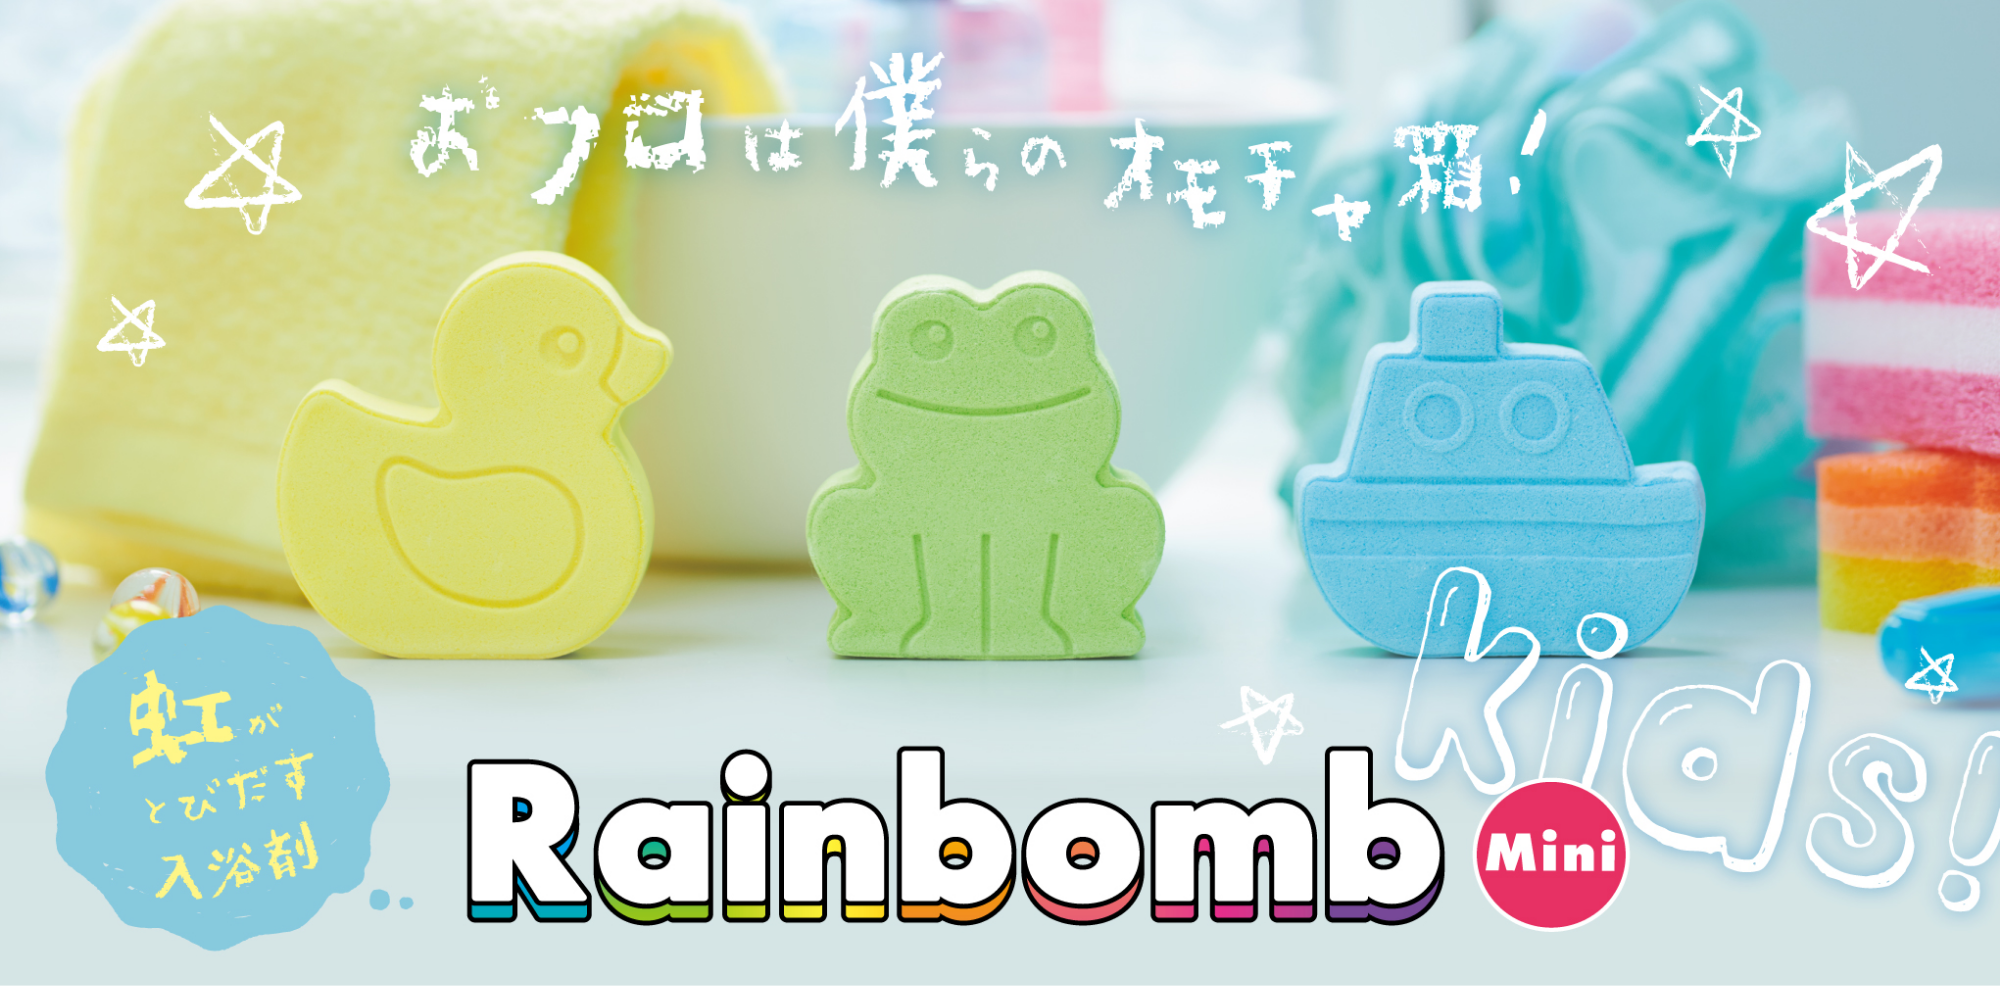 虹が出てくる入浴剤Rainbombでフォトジェニックなバスタイムを